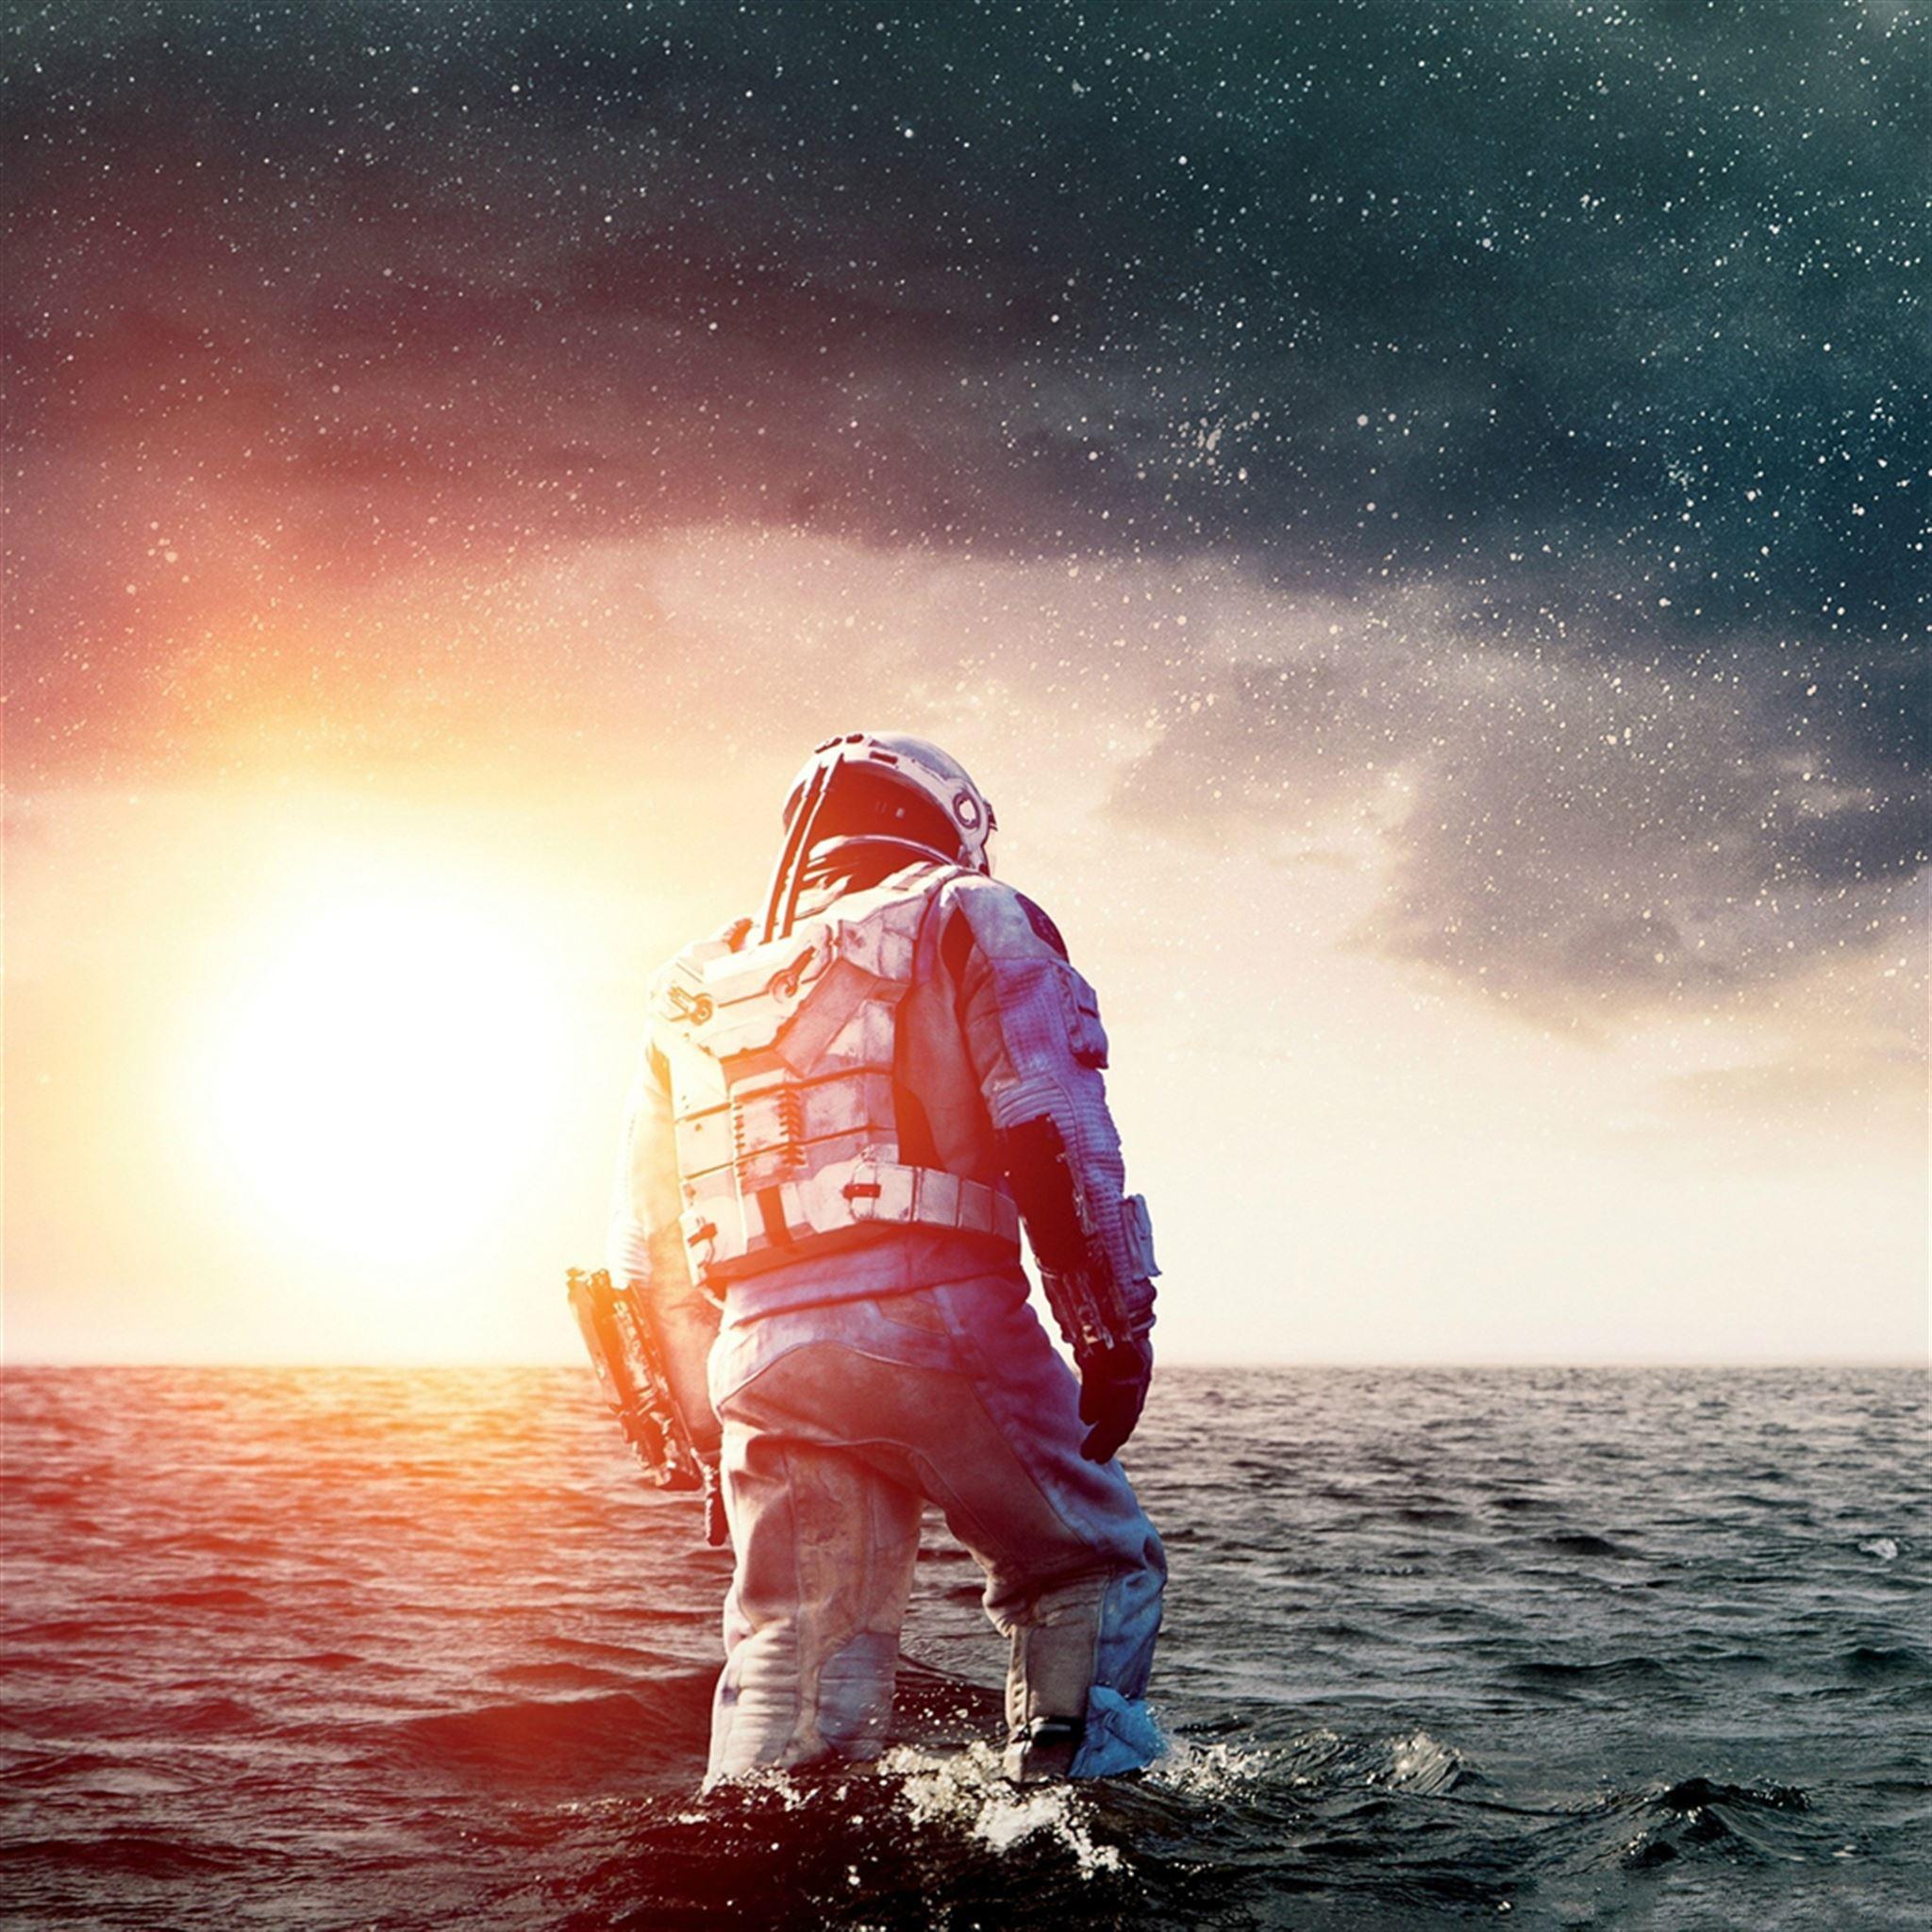 Astronaut In The Ocean Wallpapers - Top Free Astronaut In The Ocean